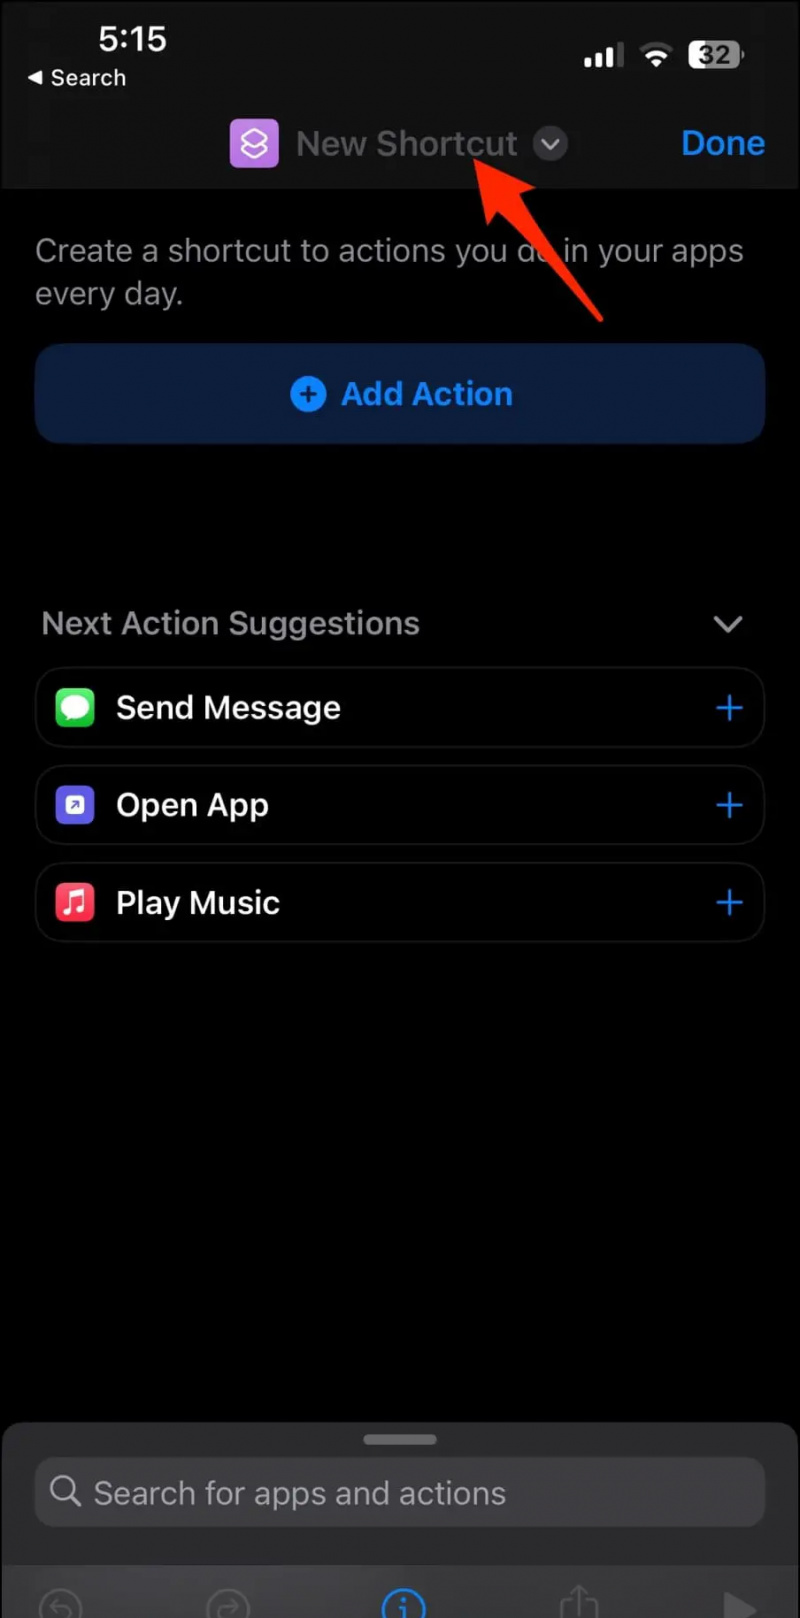   Faceți o comandă rapidă pentru aplicație protejată prin parolă pe iOS